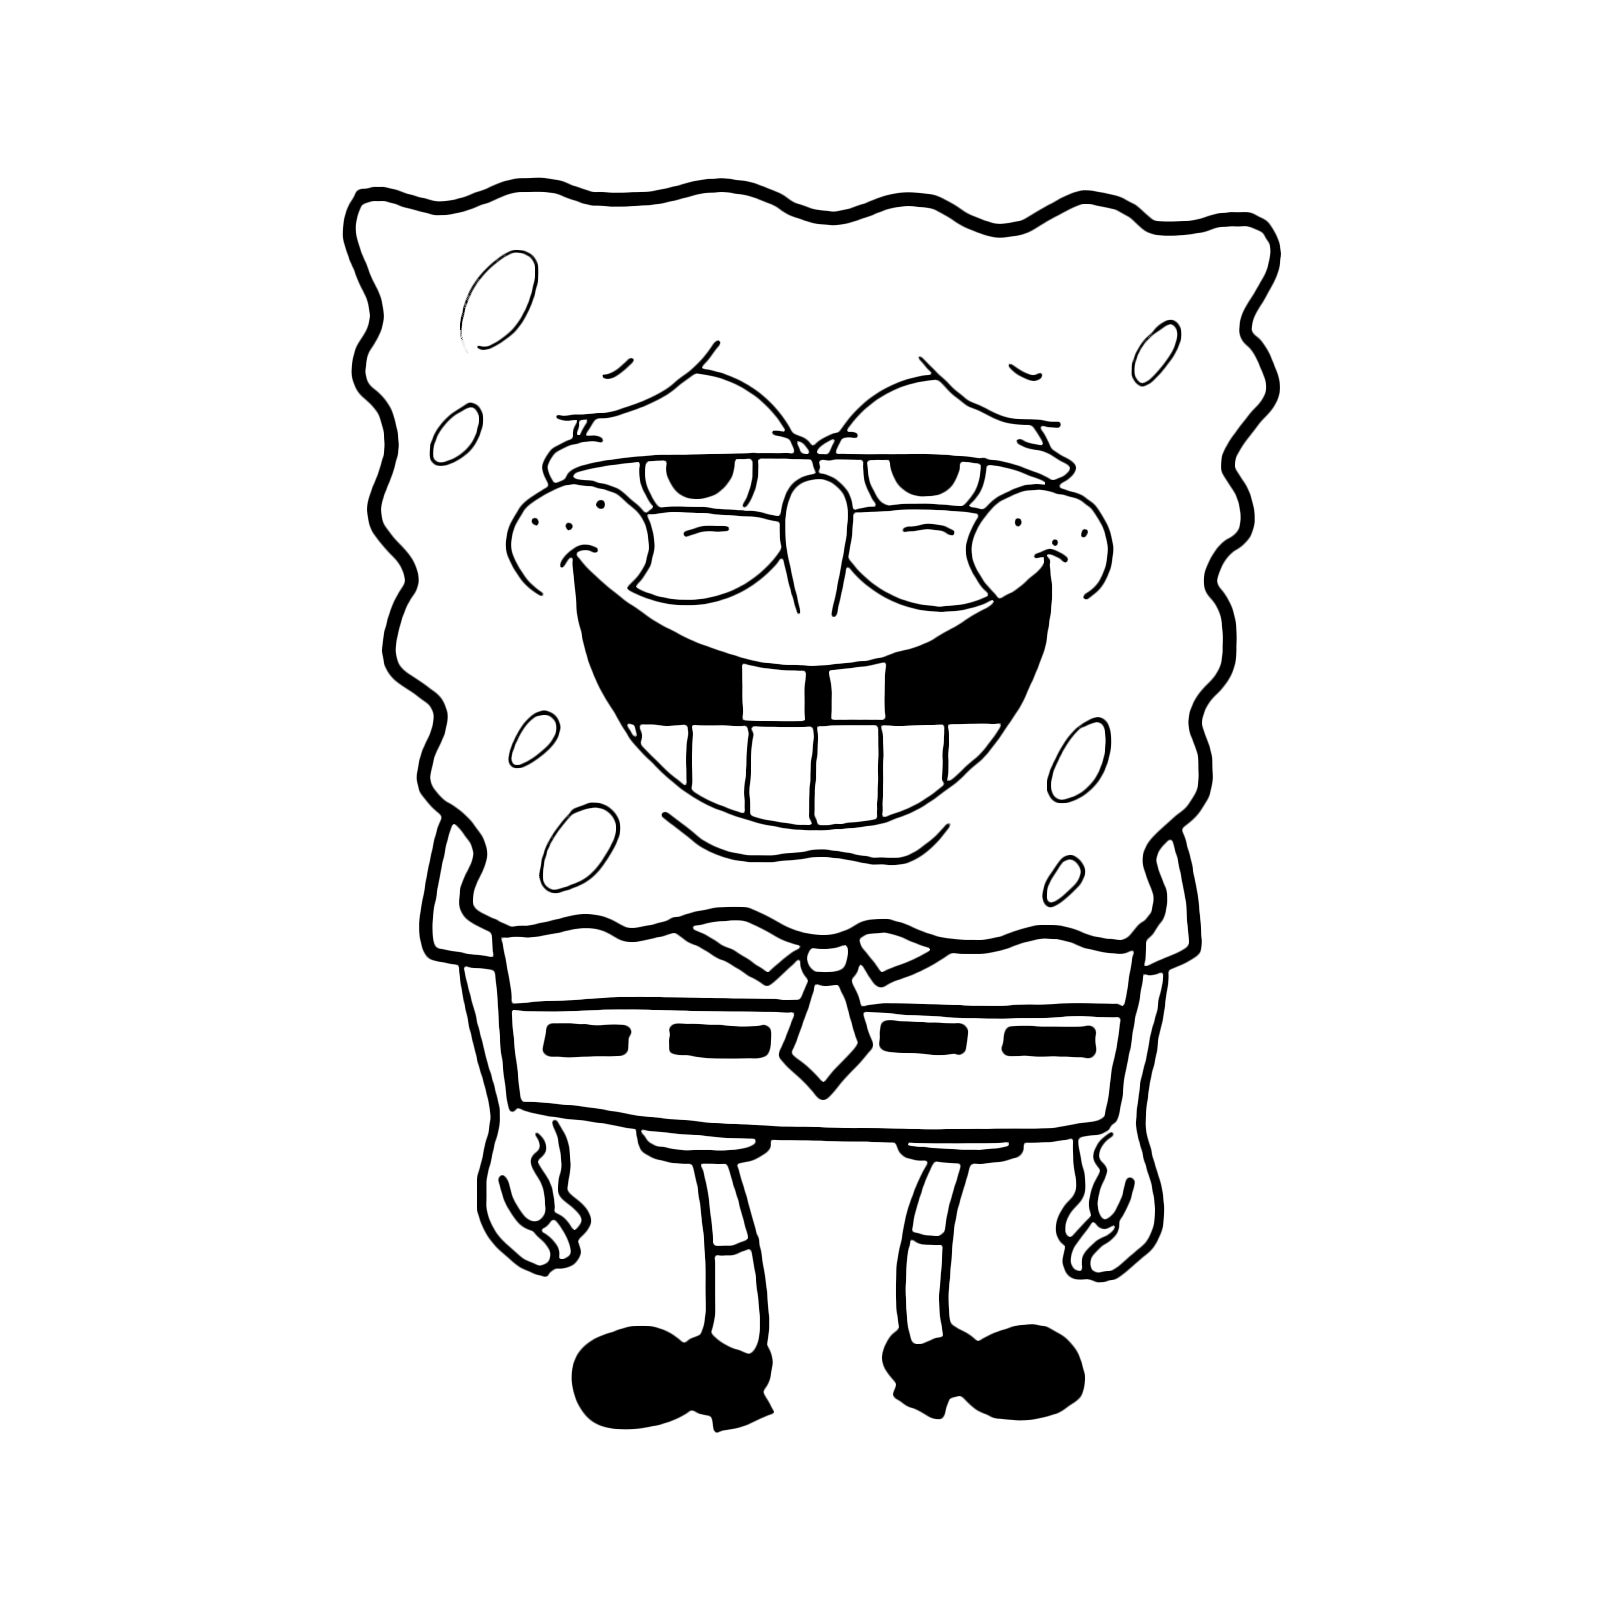 SpongeBob - SpongeBob with swollen cheeks